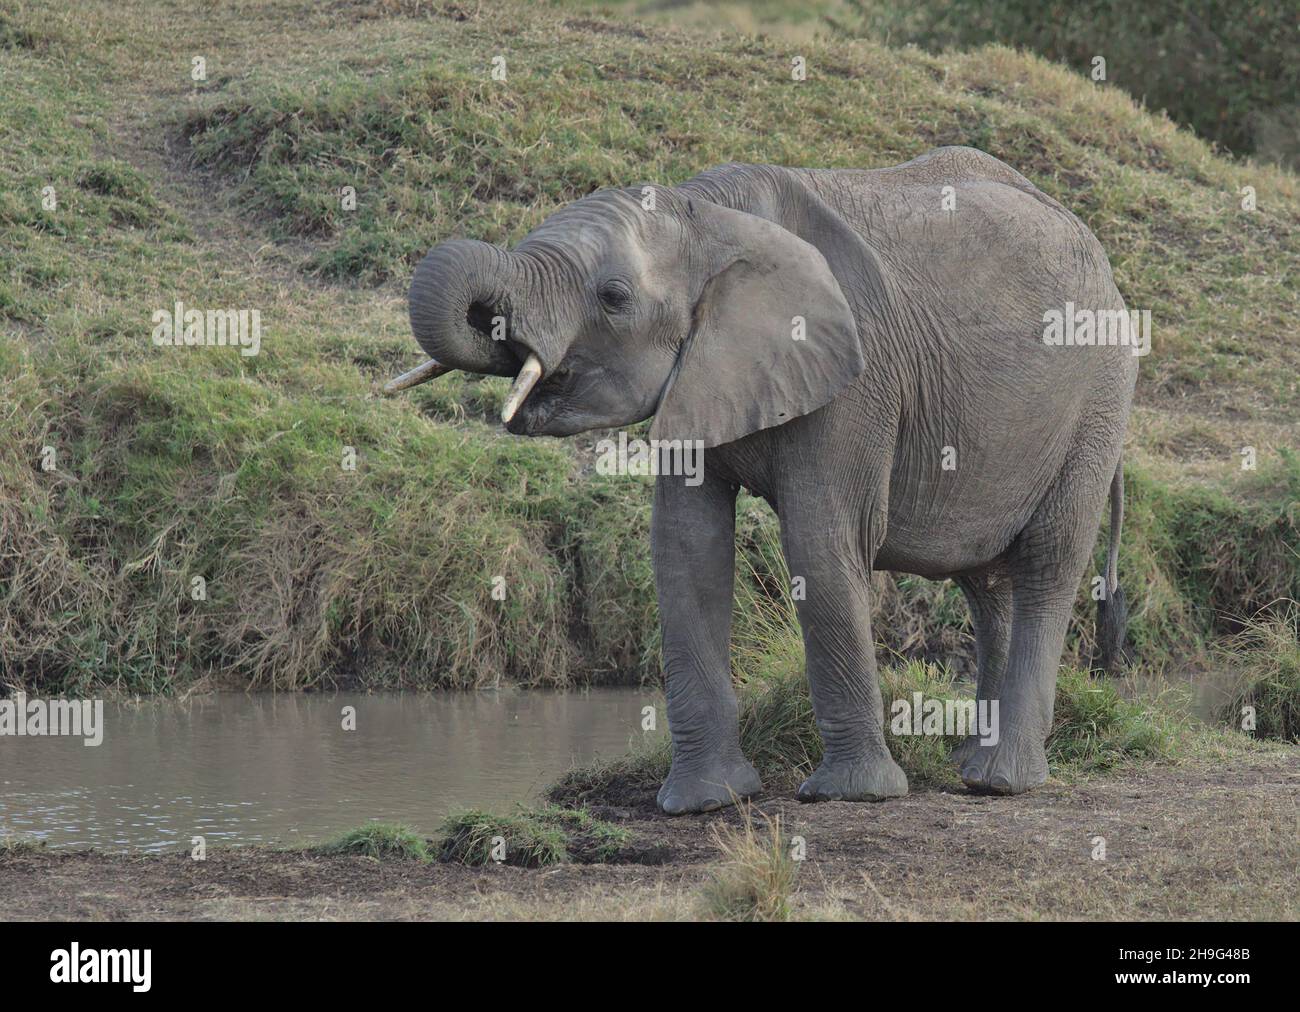 adorable et assoiffé, le jeune éléphant d'afrique boit de l'eau provenant du trou d'eau dans les plaines sauvages du masai mara kenya Banque D'Images